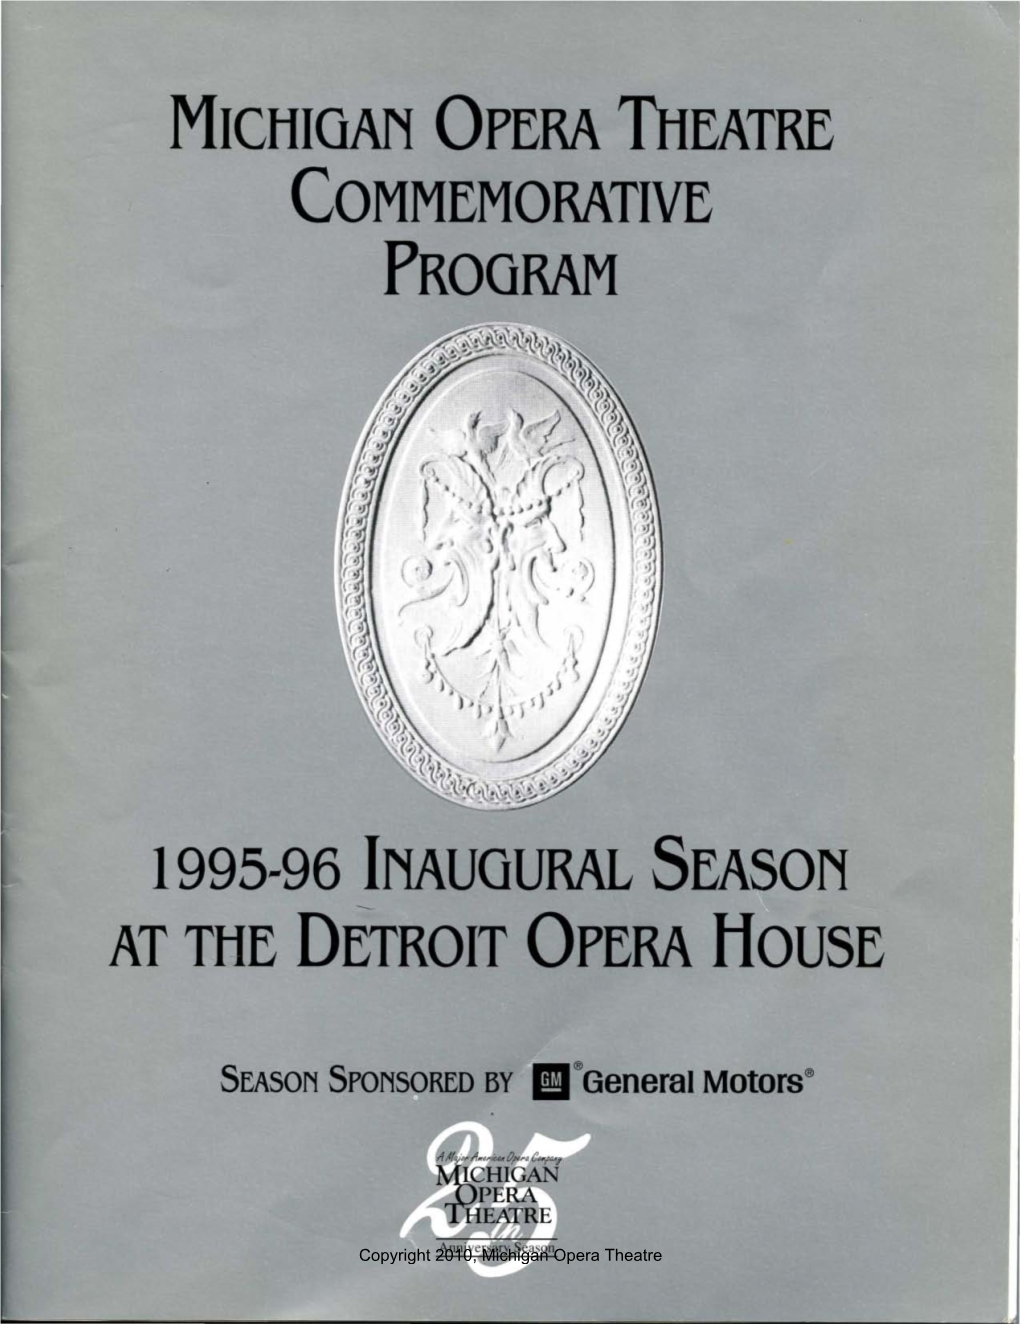 Michigan Opera Theatre Commemorative Program 1995-96 Inaugural Season at the Detroit Opera House